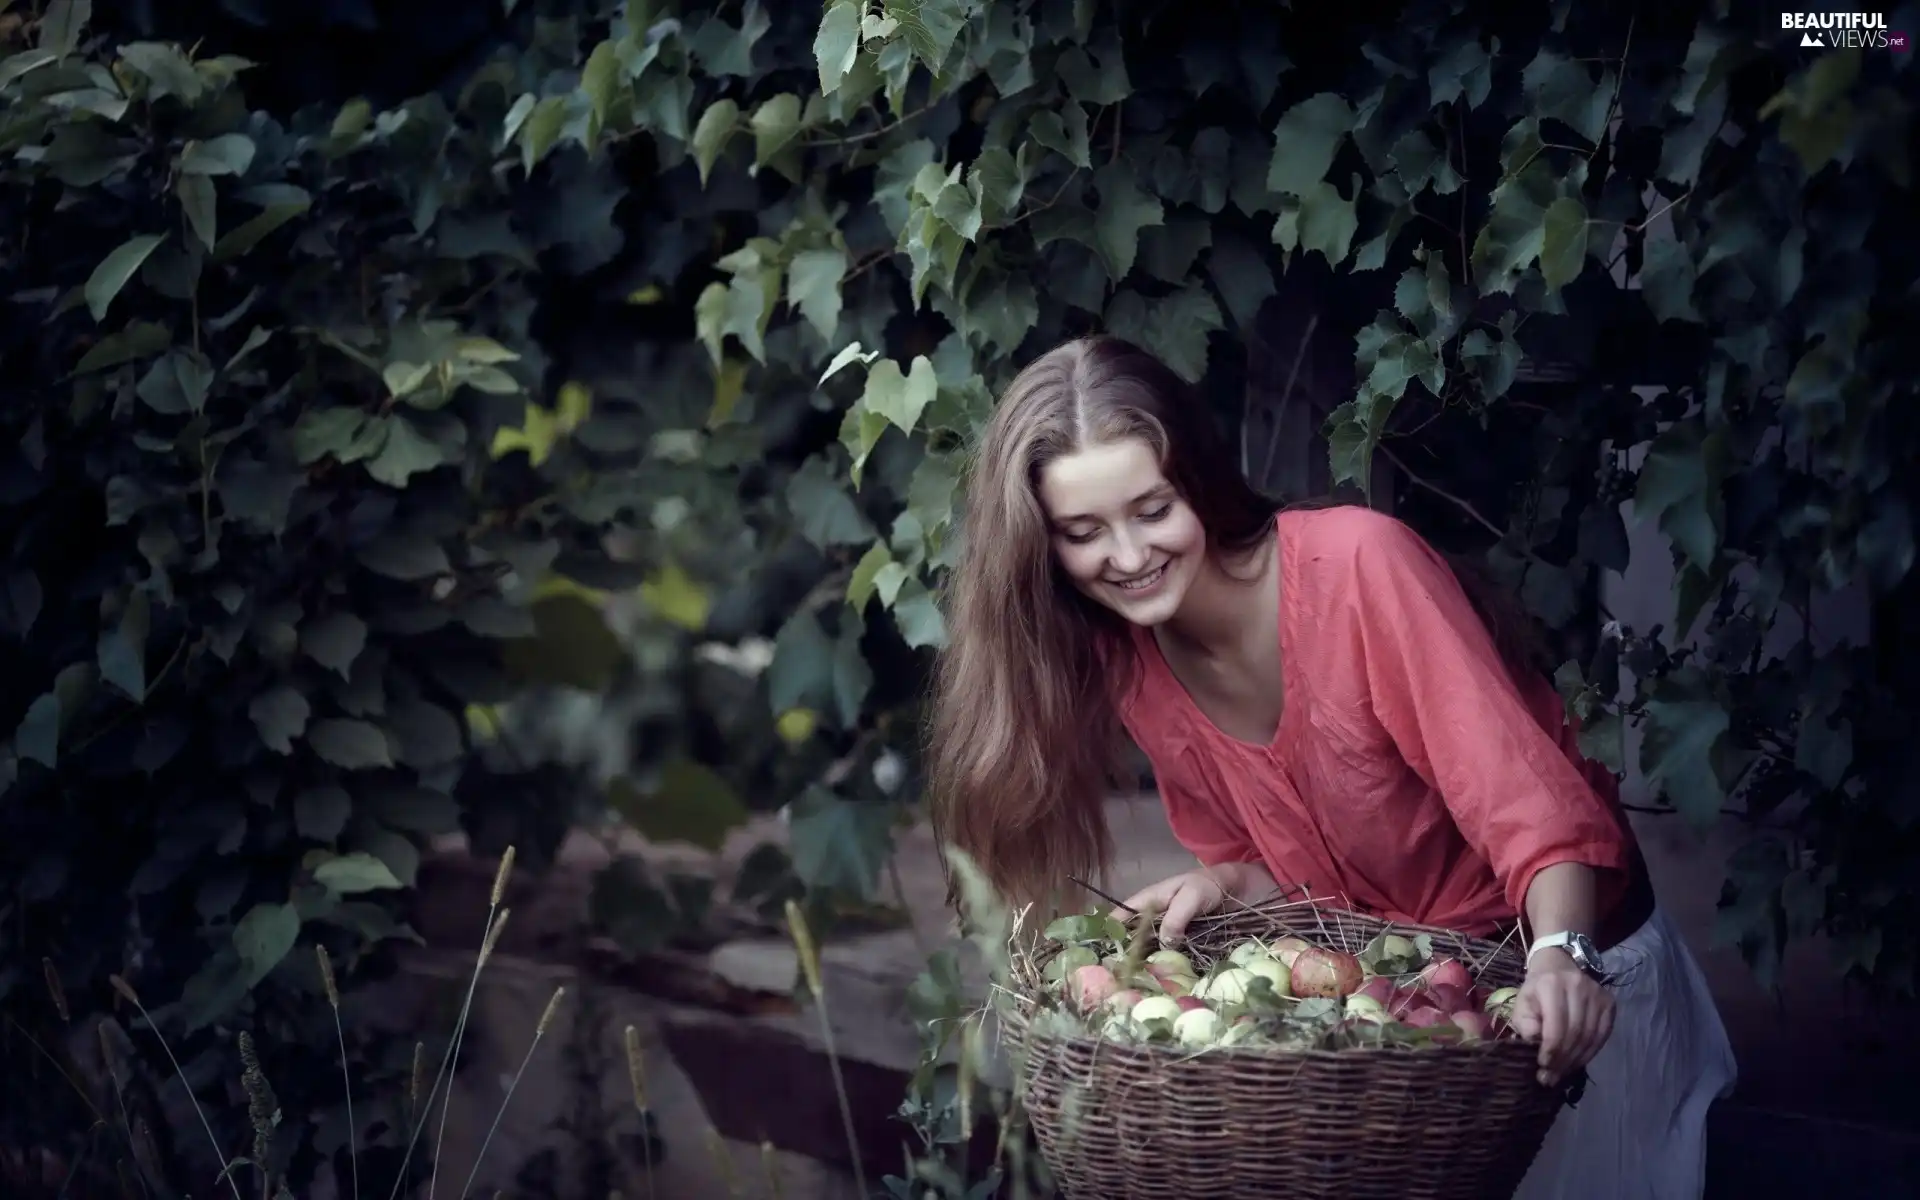 apples, harvest, orchard, basket, Women